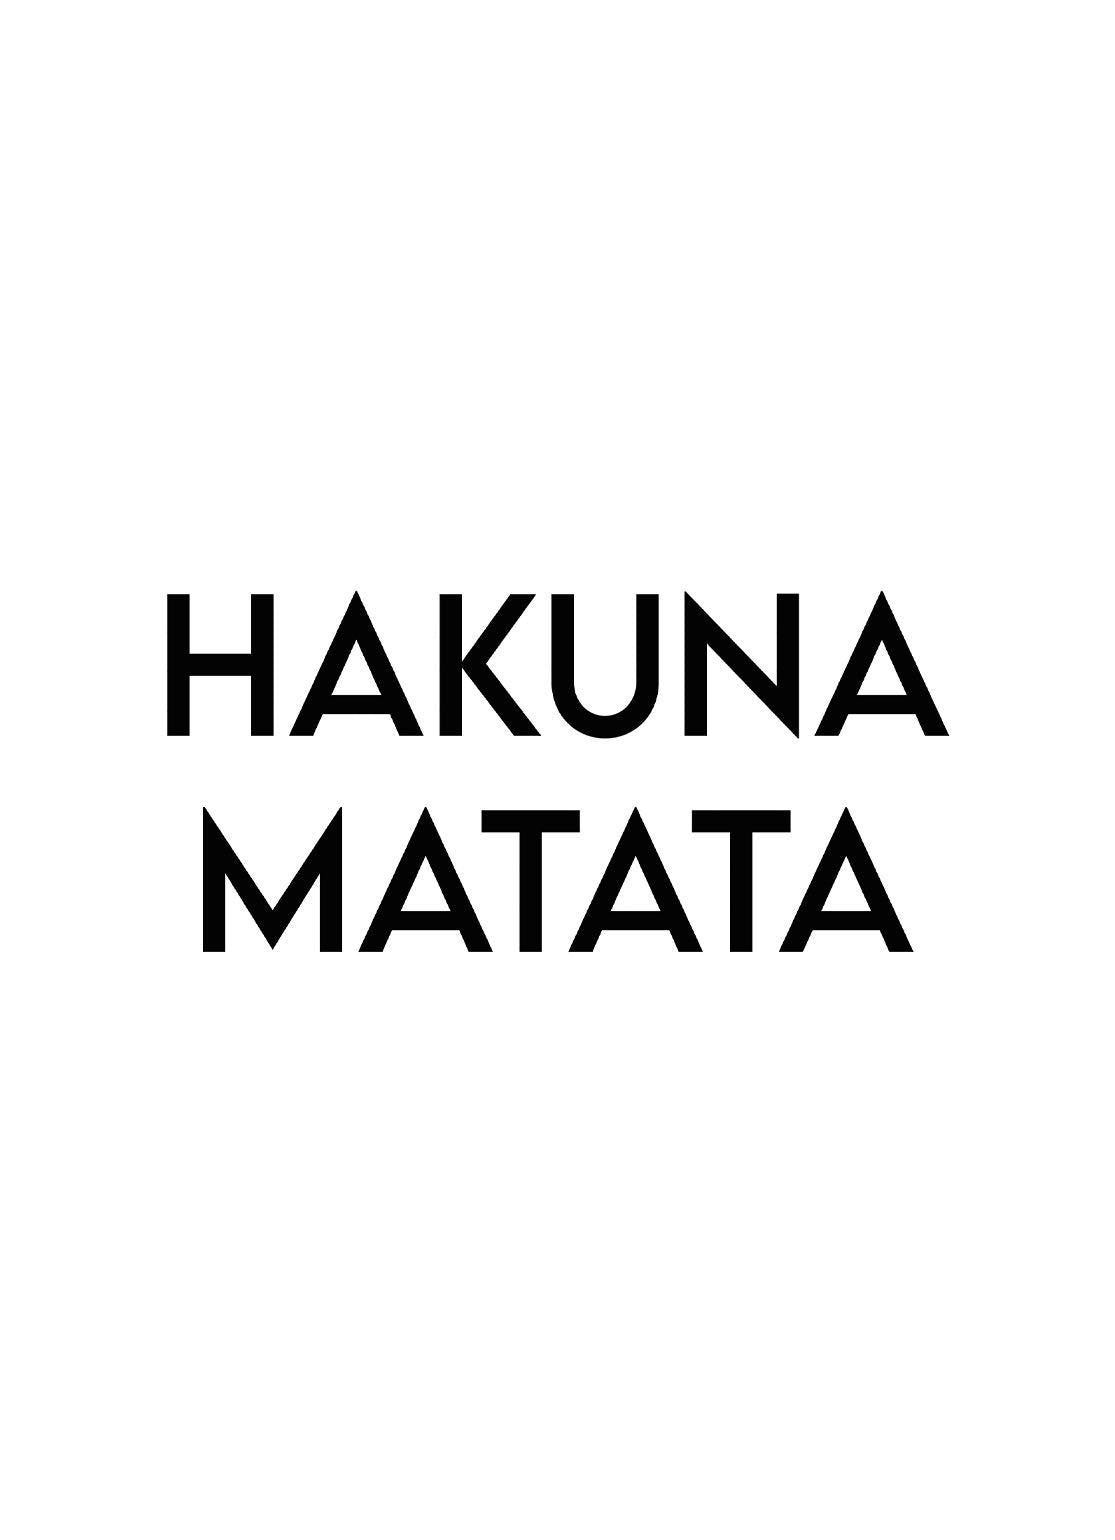 Hakuna Matata - Avemfactory